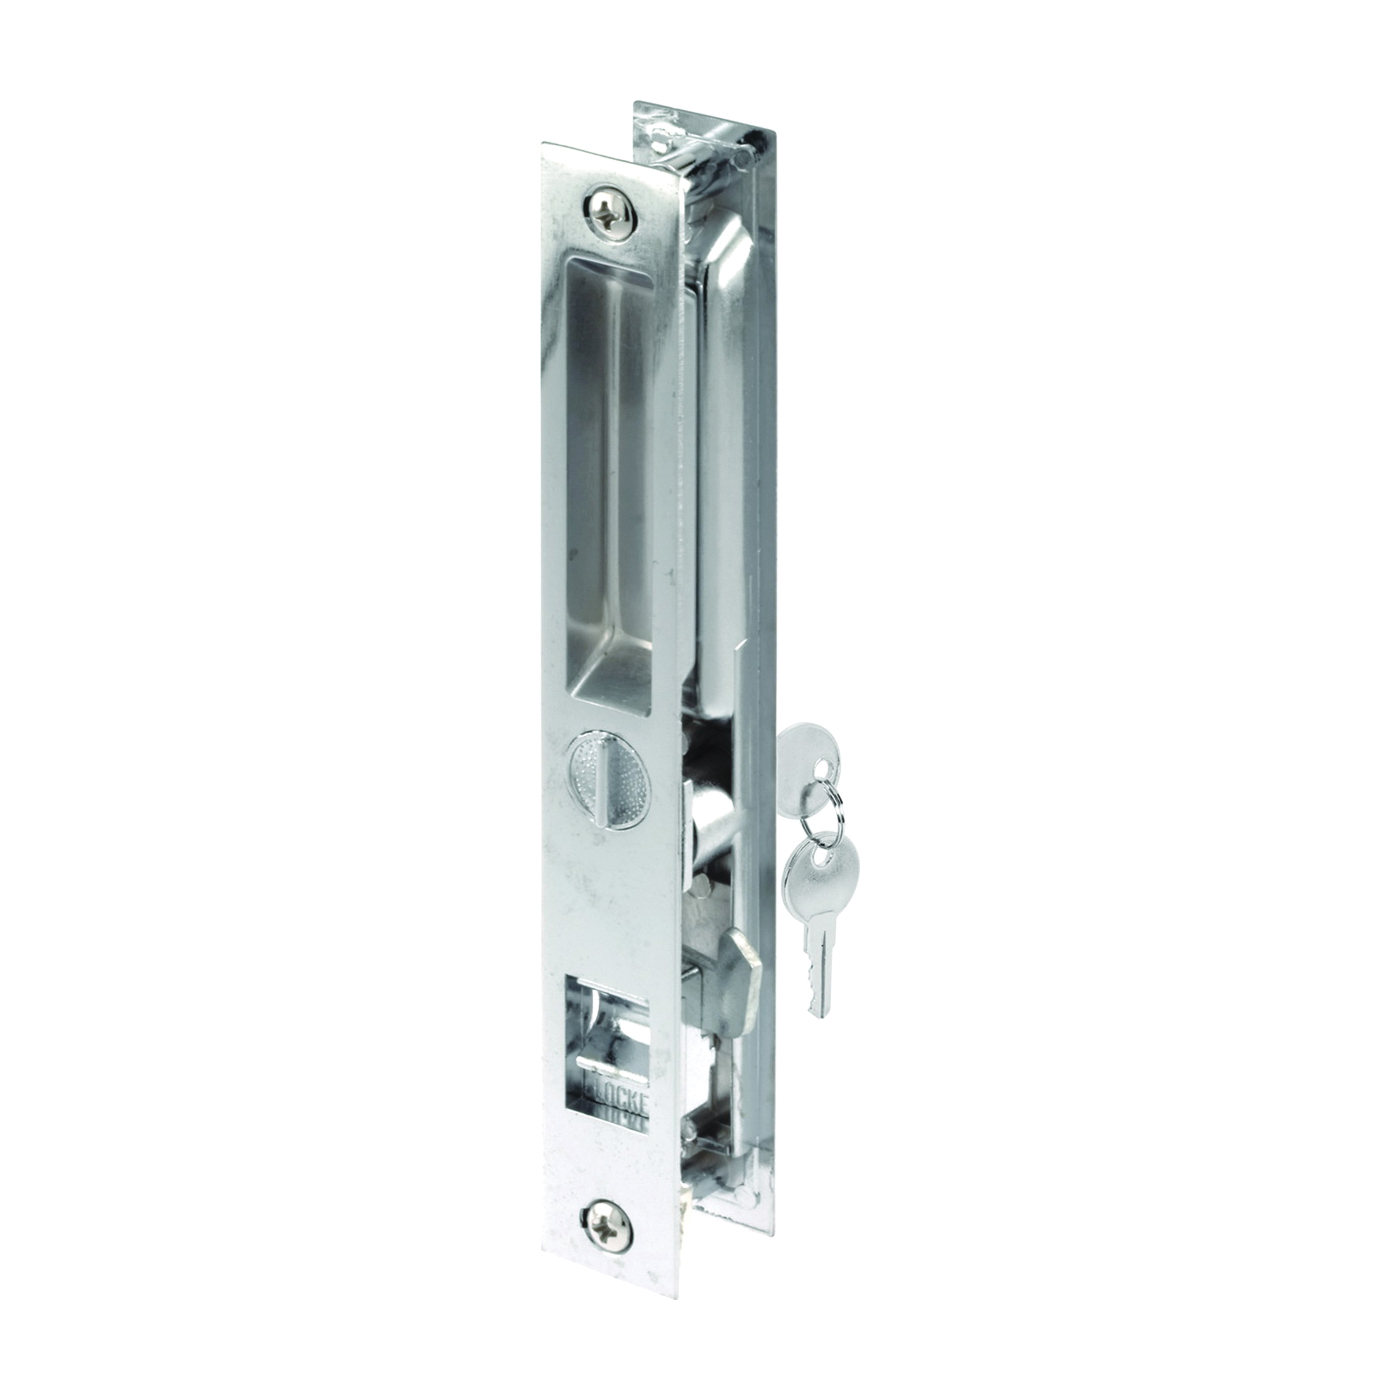 C 1076 Handleset, Aluminum, Chrome, For: 1-1/4 in THK Glass Sliding Doors